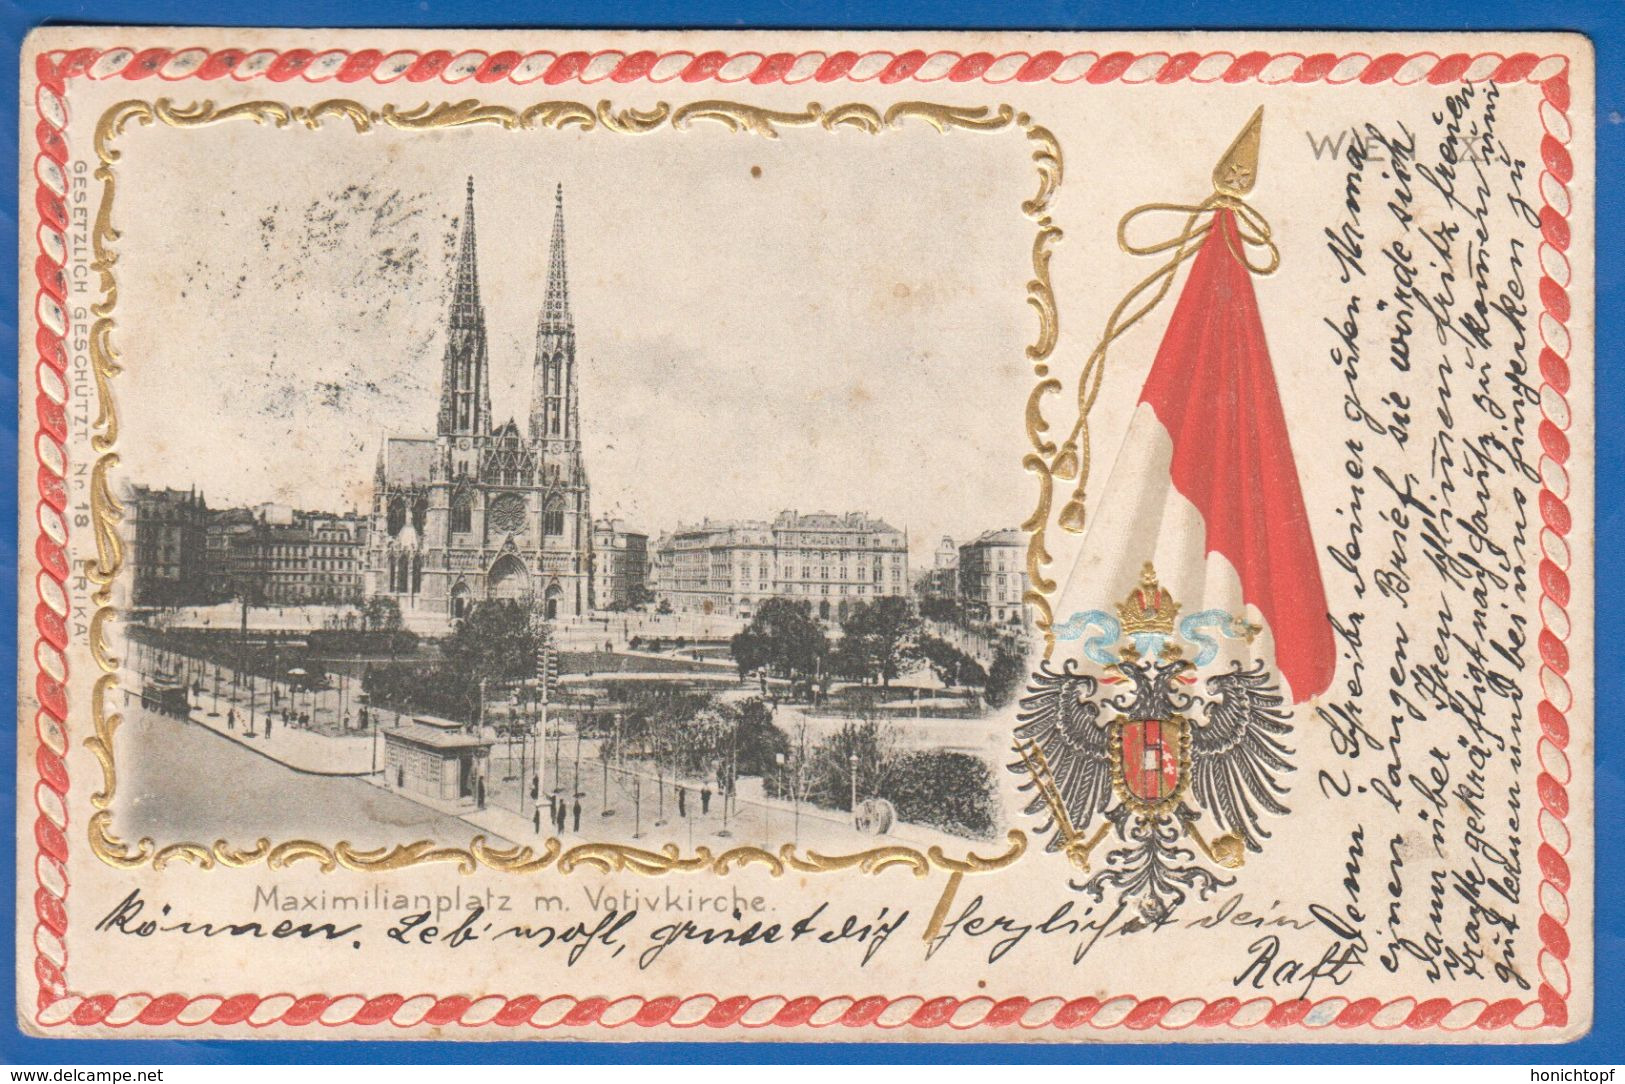 Österreich; Wien; Maximilianplatz Mit Votivkirche; 1903; Prägekarte Mit Goldrand - Wien Mitte